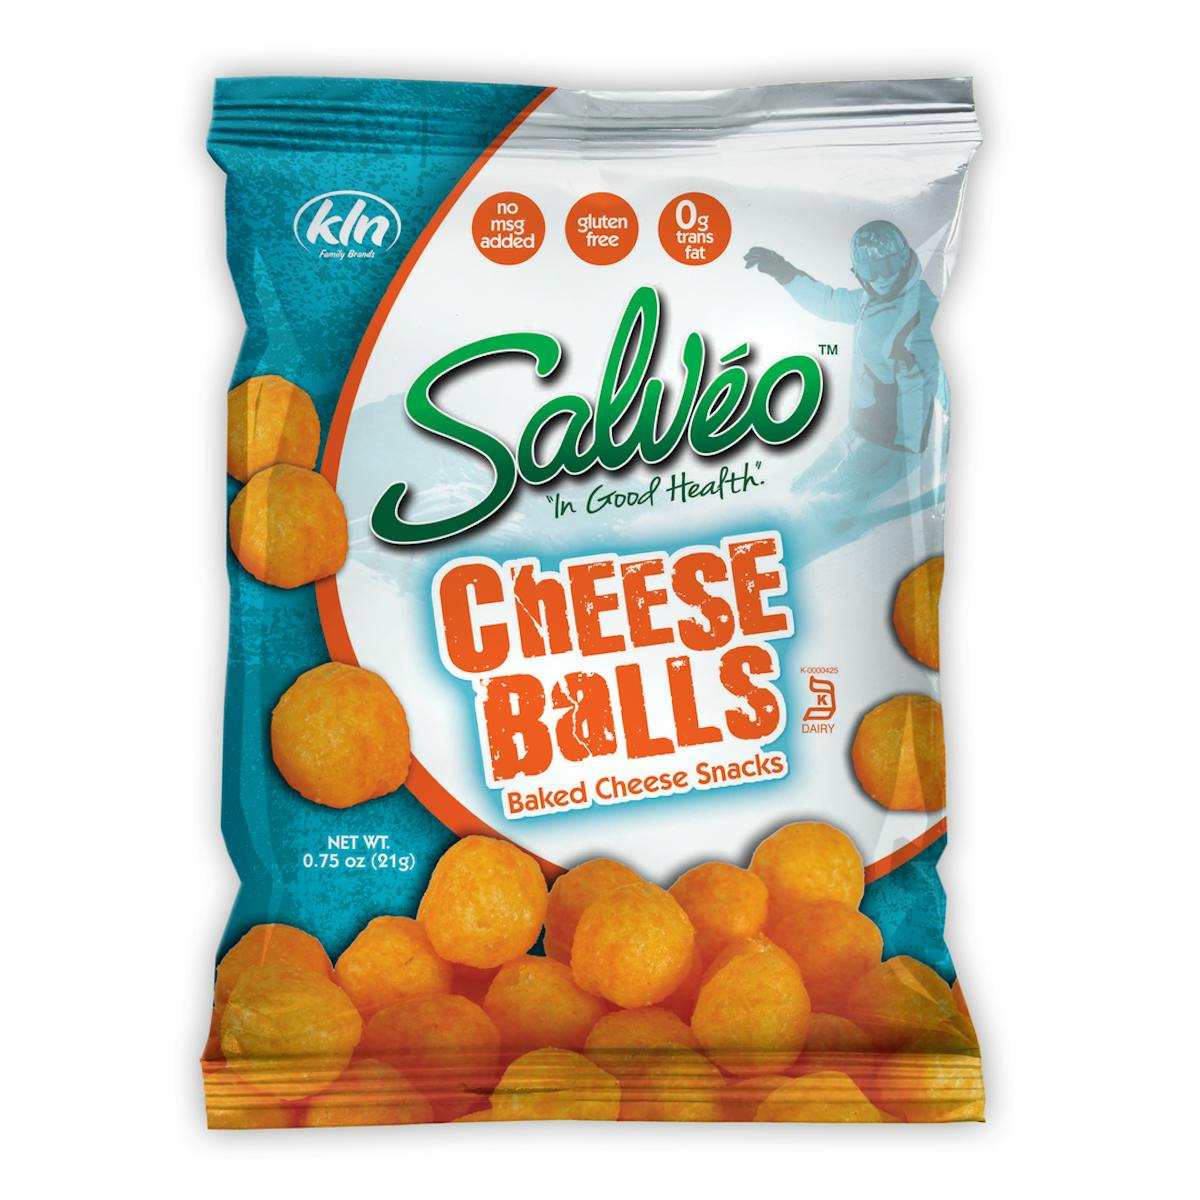 Salveo Cheese Balls 5457a48403aff